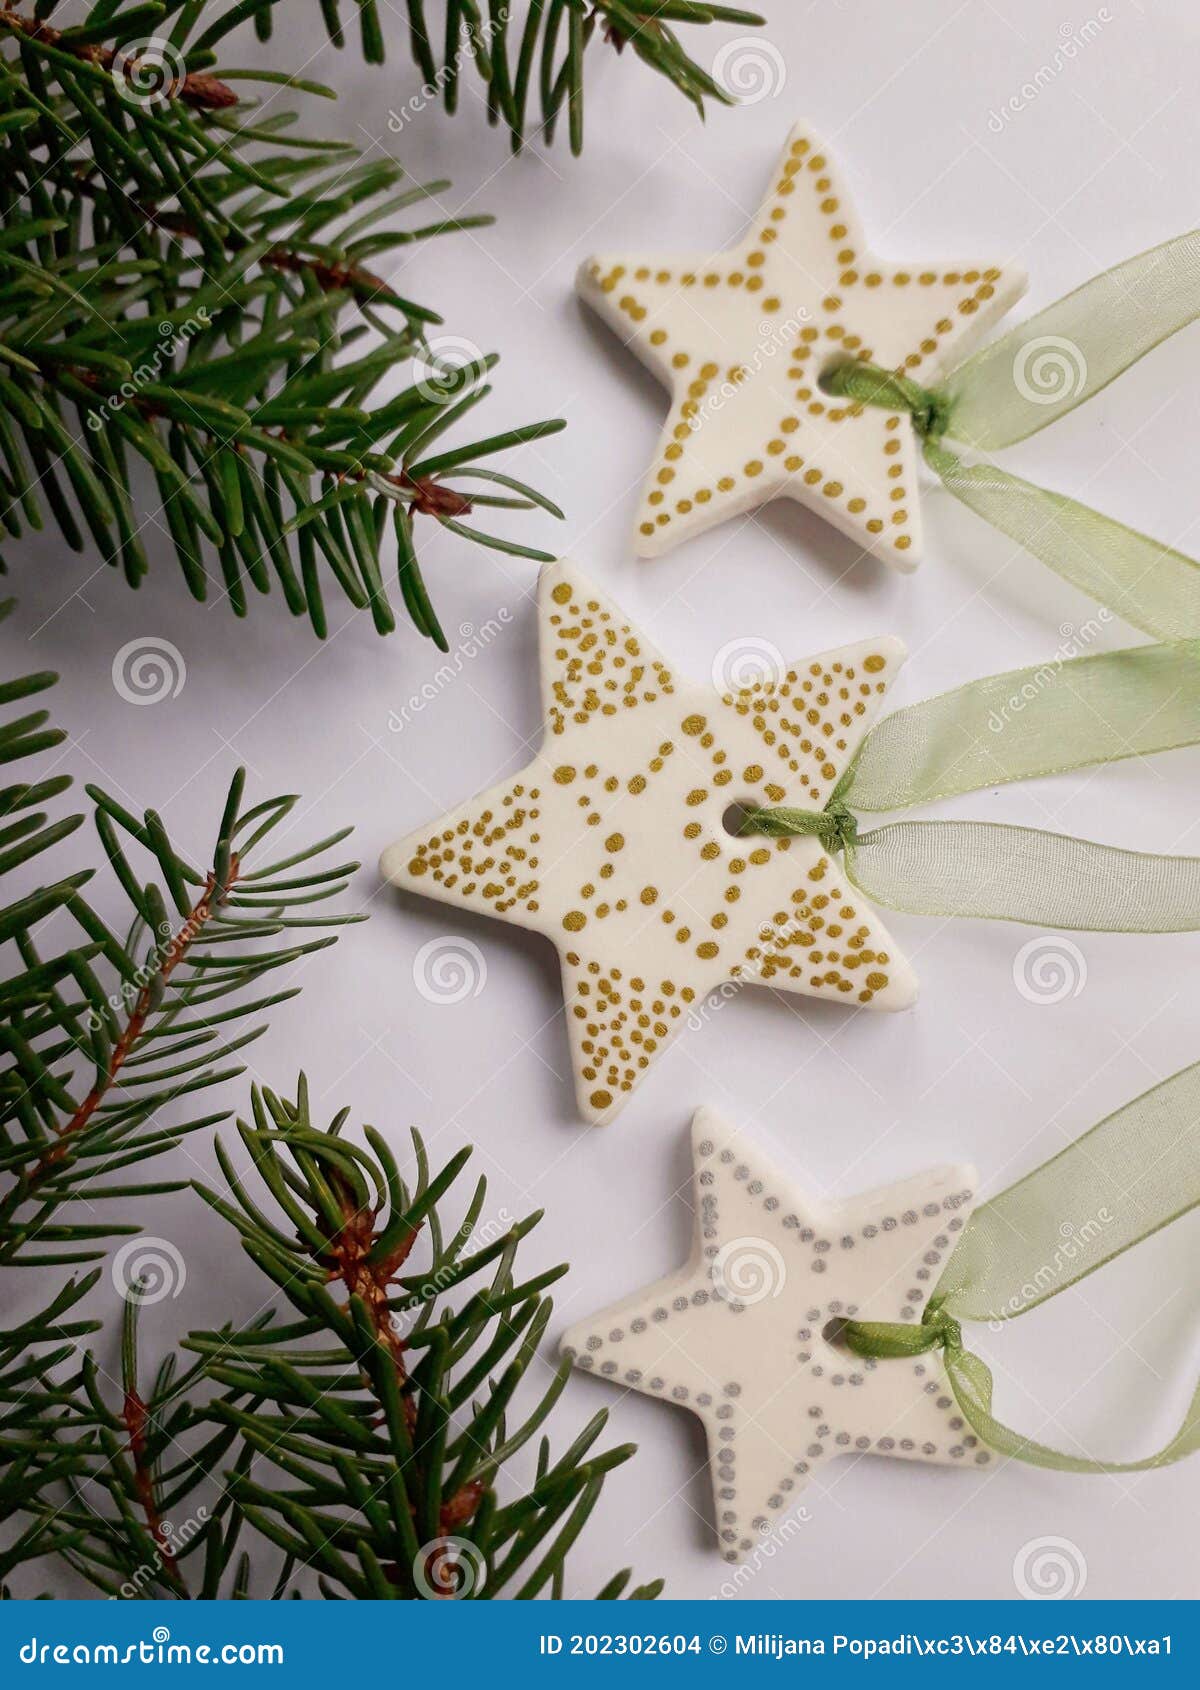 Estrellas De Adornos De Navidad Foto de archivo - Imagen de invierno,  estrellas: 202302604